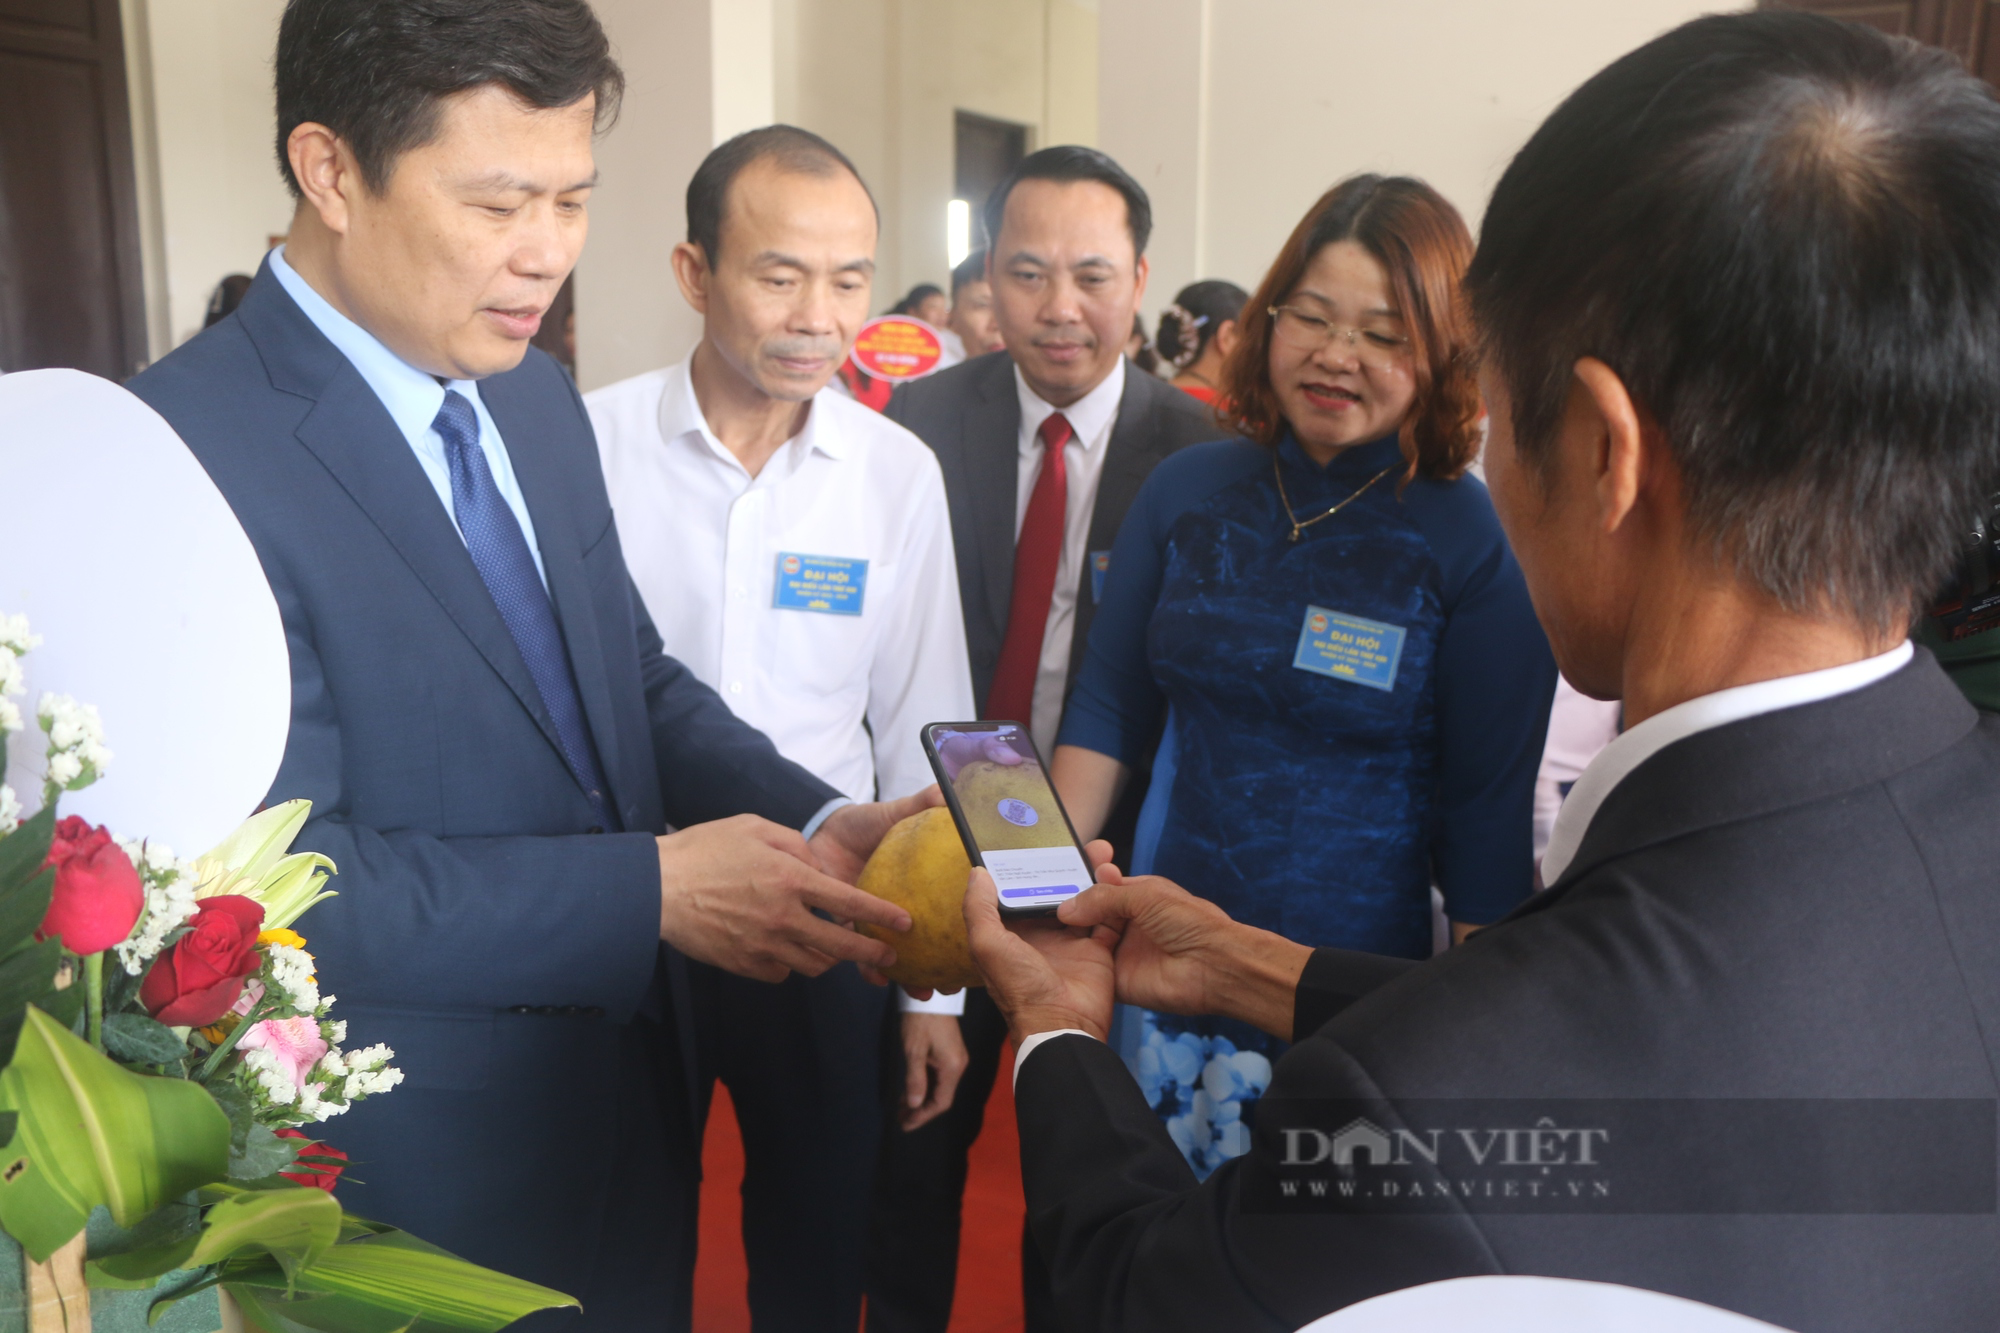 Hưng Yên: Đại hội Hội Nông dân huyện Văn Lâm bầu 18 đồng chí tham gia Ban Chấp hành - Ảnh 3.